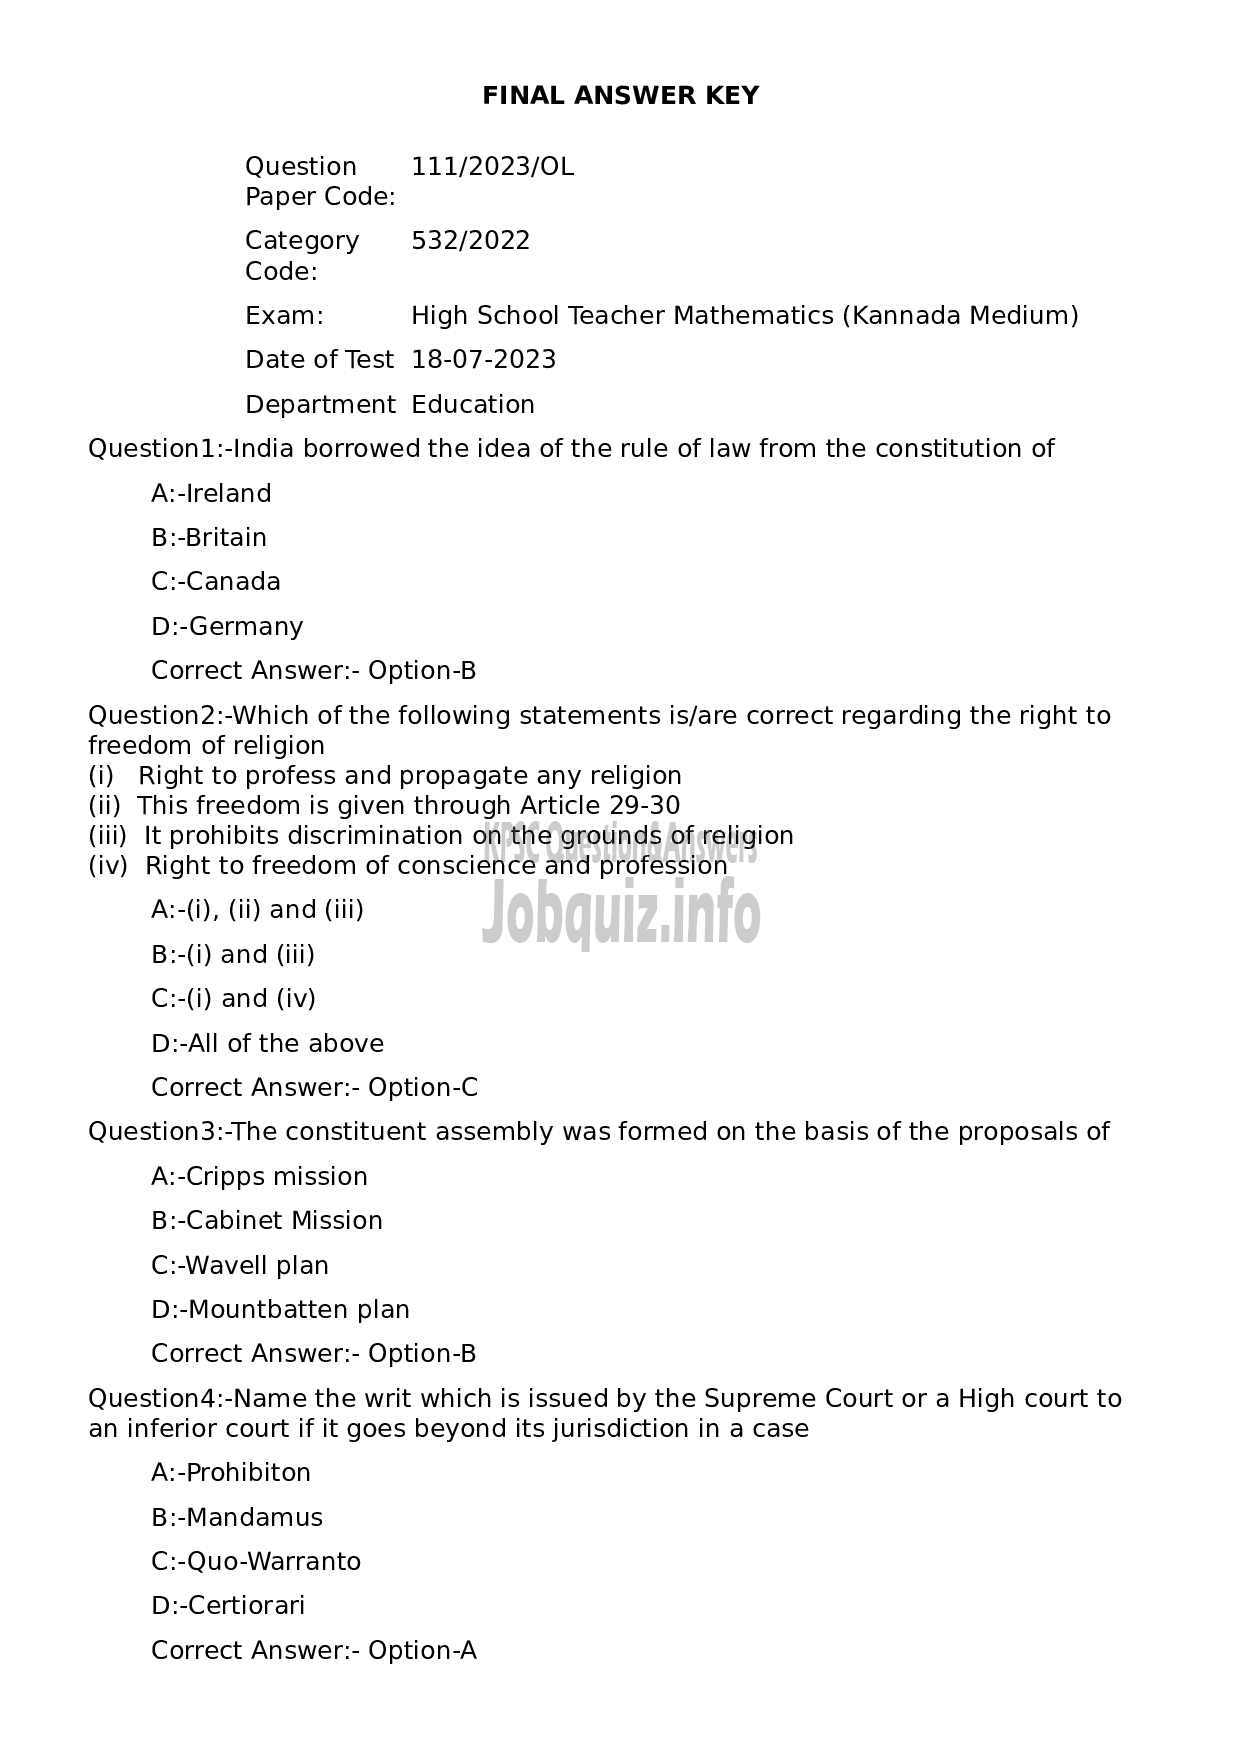 Kerala PSC Question Paper - High School Teacher Mathematics (Kannada Medium)-1